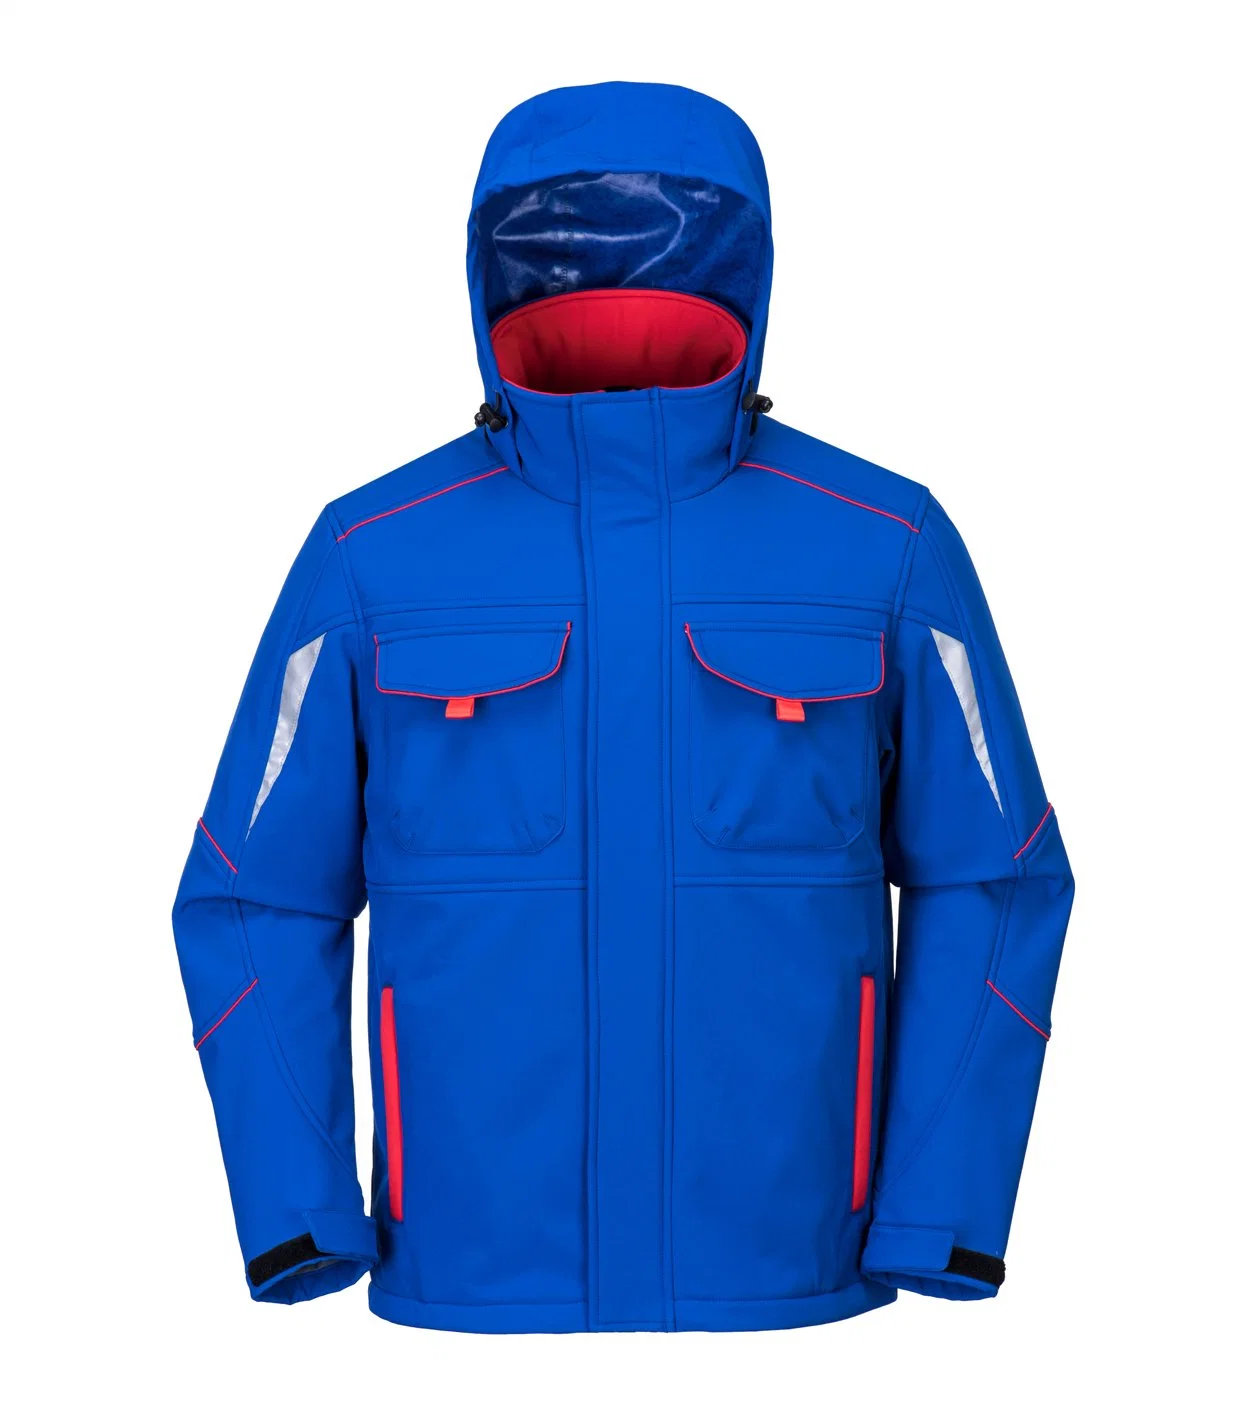 Venta caliente el diseño de moda de invierno Ropa de hombre impermeable transpirable exterior Windproof encapuchados Hombres chaqueta Softshell